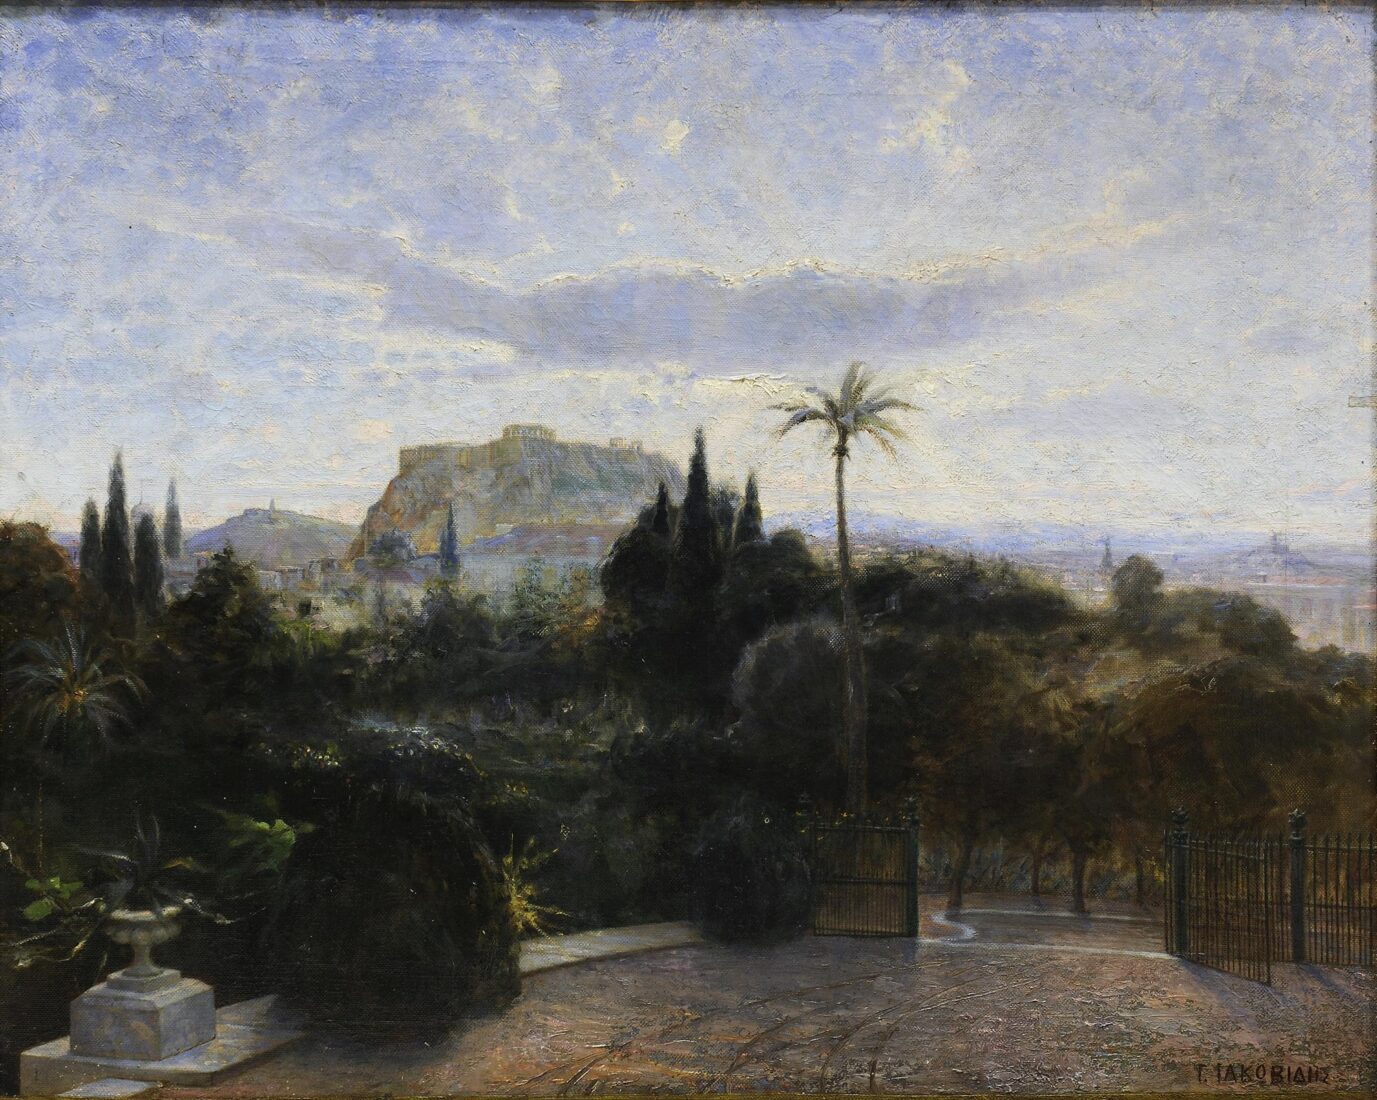 Ο Βασιλικός κήπος με την Ακρόπολη και το λόφο του Φιλοπάππου - Ιακωβίδης Γεώργιος